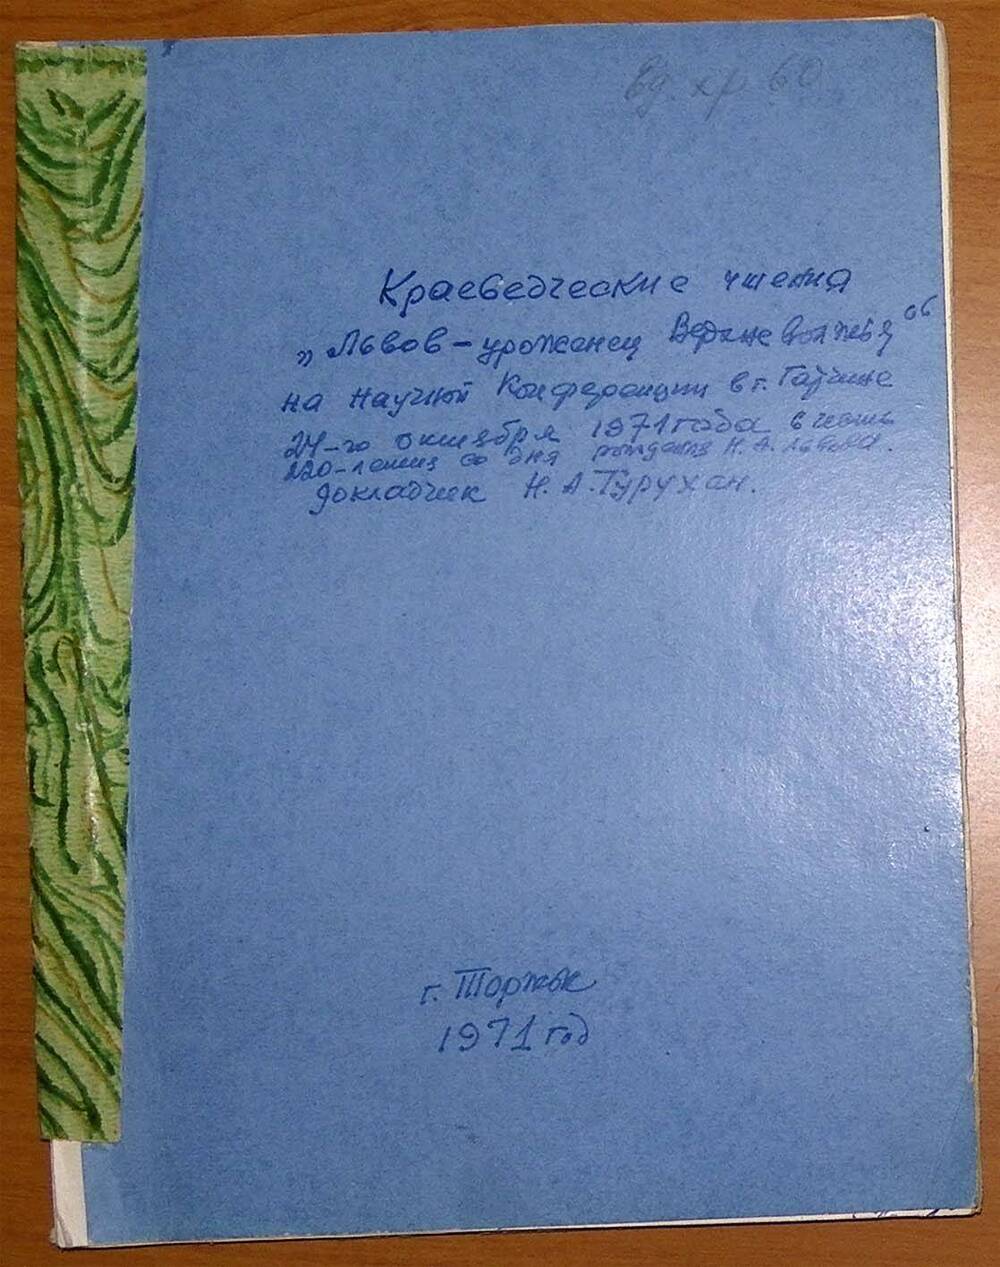 Доклад Н.А. Турухана Львов - урожнец Верхневолжья на научной конференции в Гатчине 24 октября 1971 г.